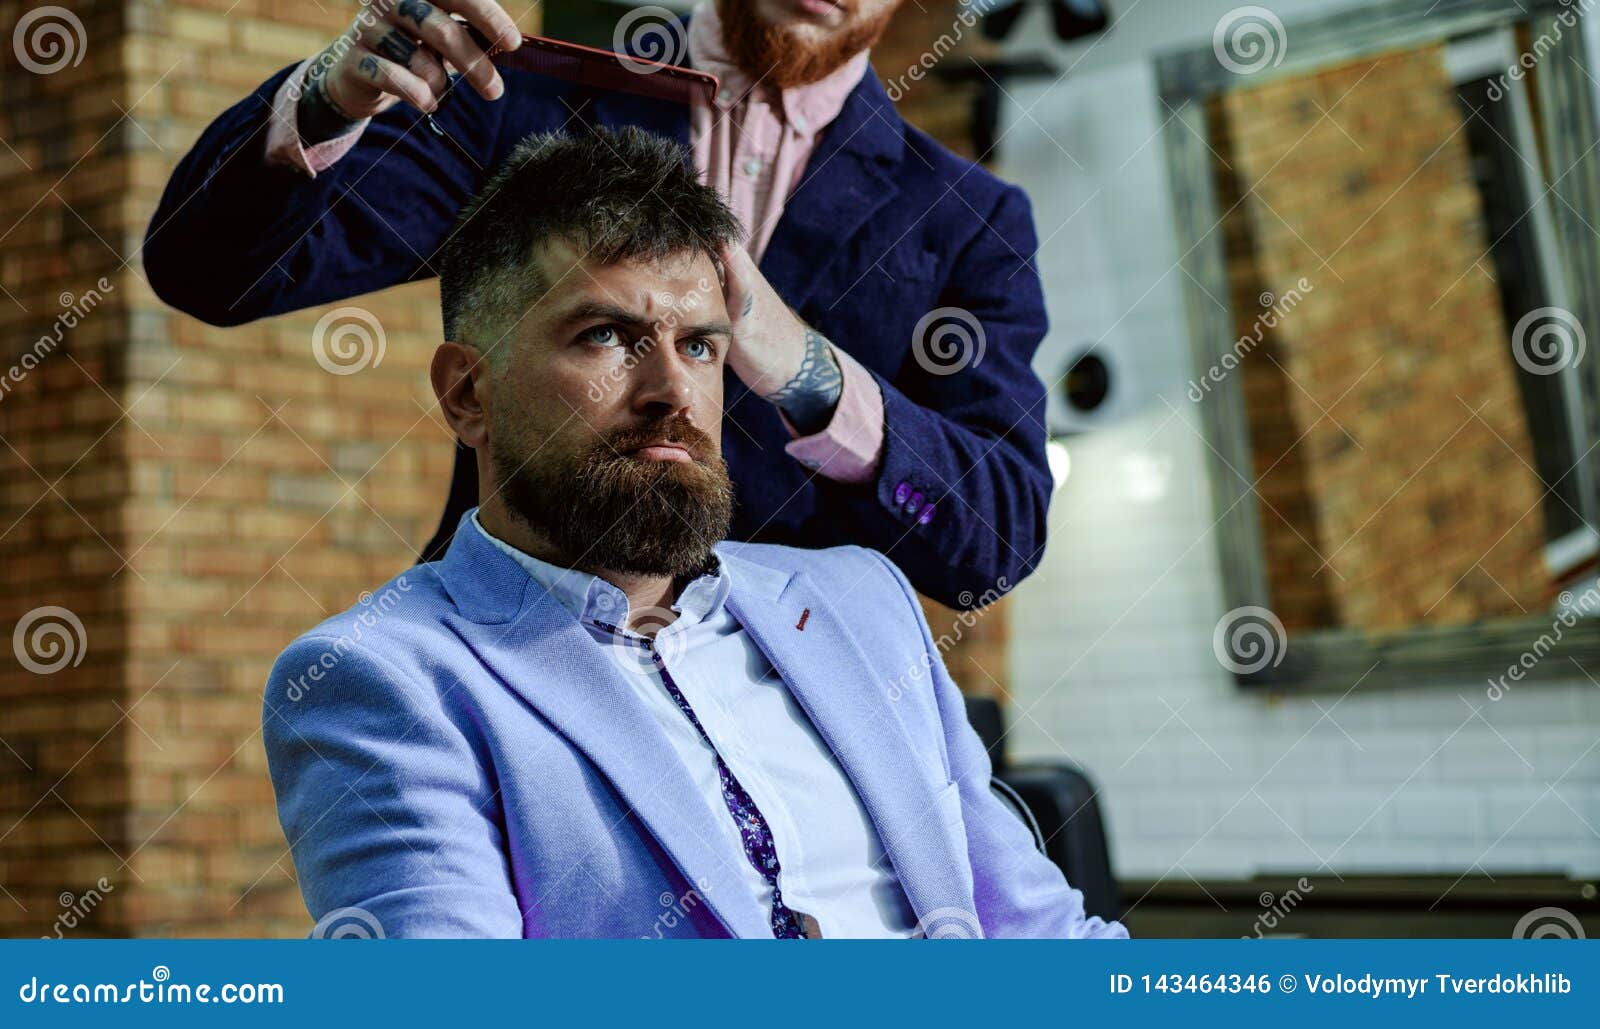 Barbeiro masculino em camisa xadrez penteando o cabelo de um